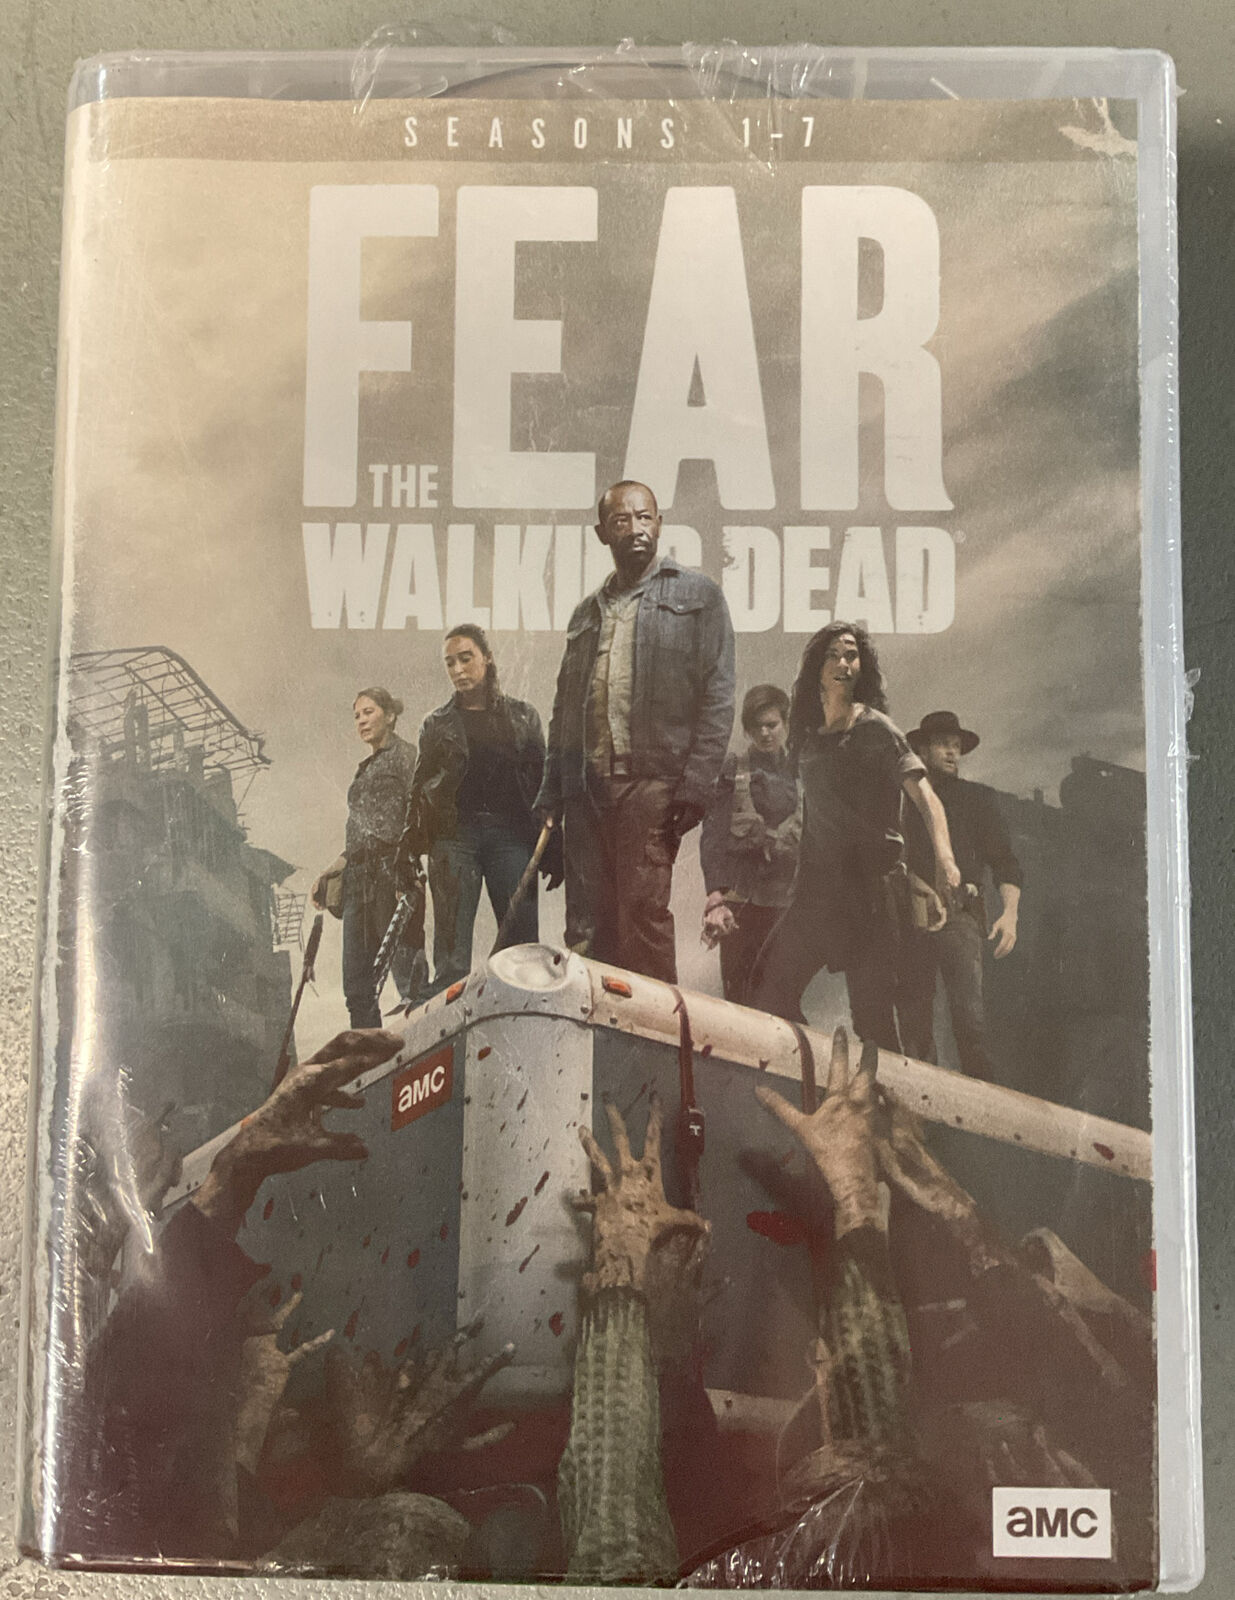 Fear The Walking Dead Seasons 1-7 (DVD)  new/sealed